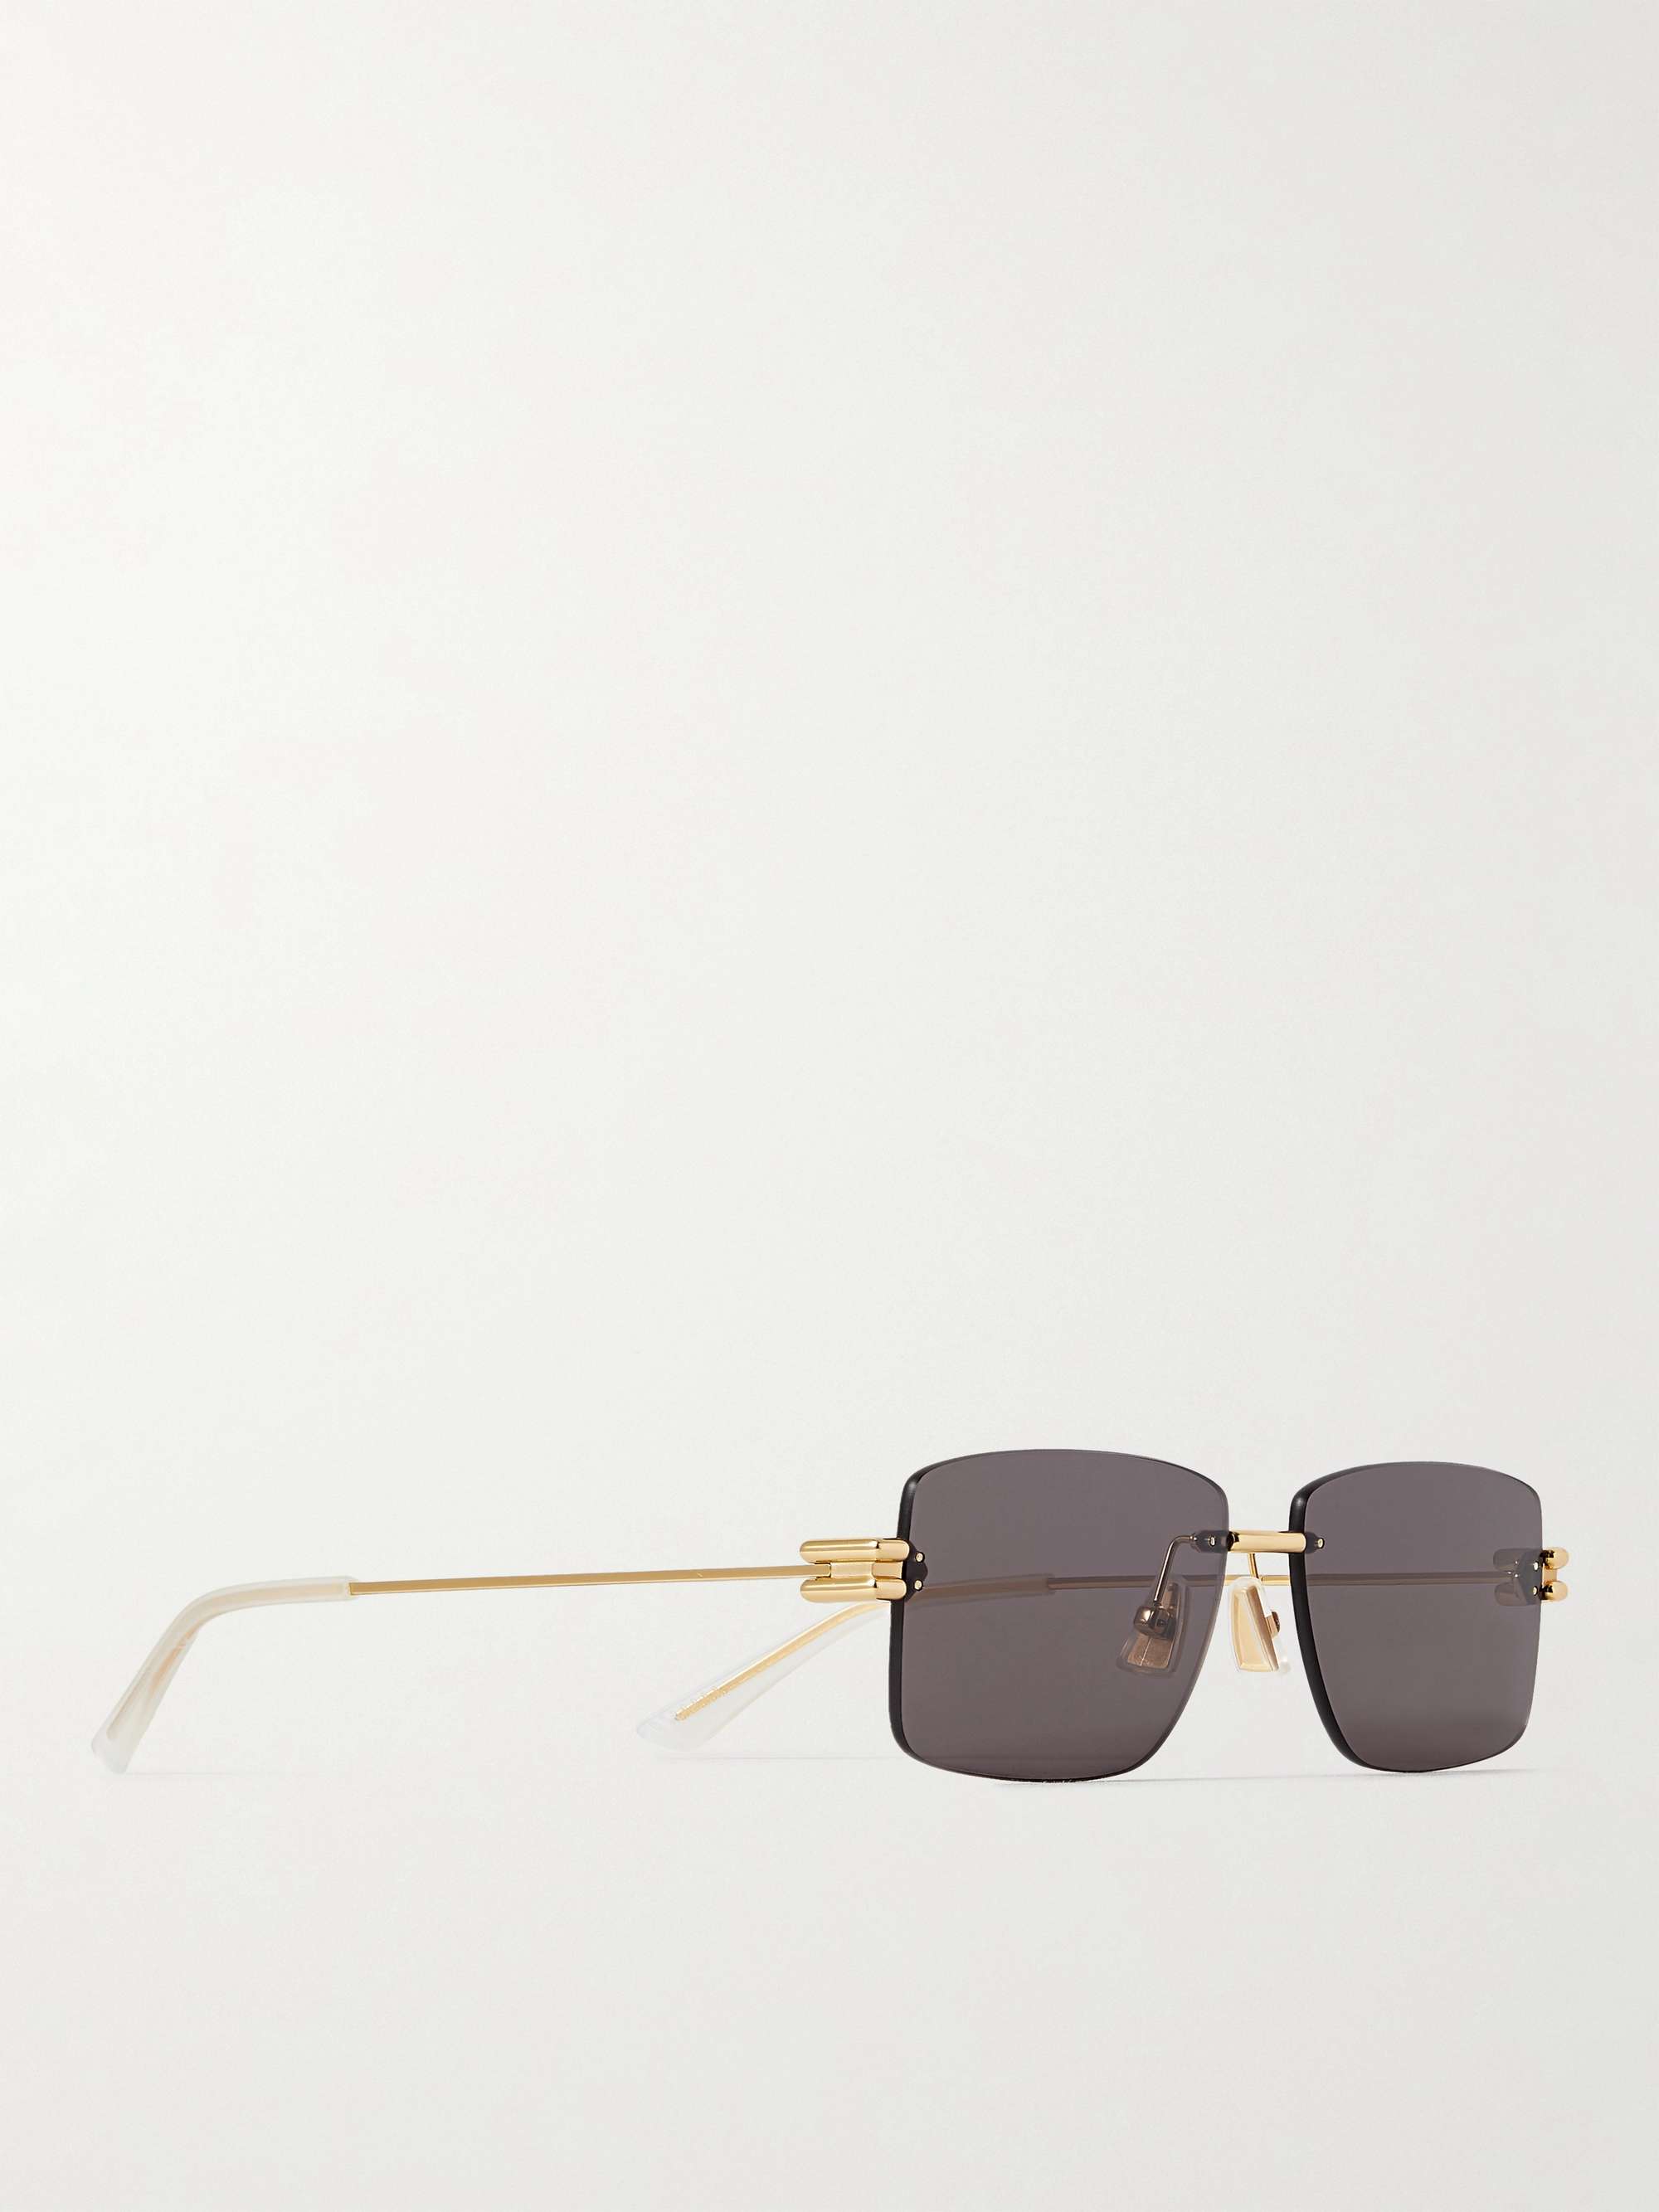 BOTTEGA VENETA EYEWEAR Frameless Gold-Tone Sunglasses for Men | MR PORTER